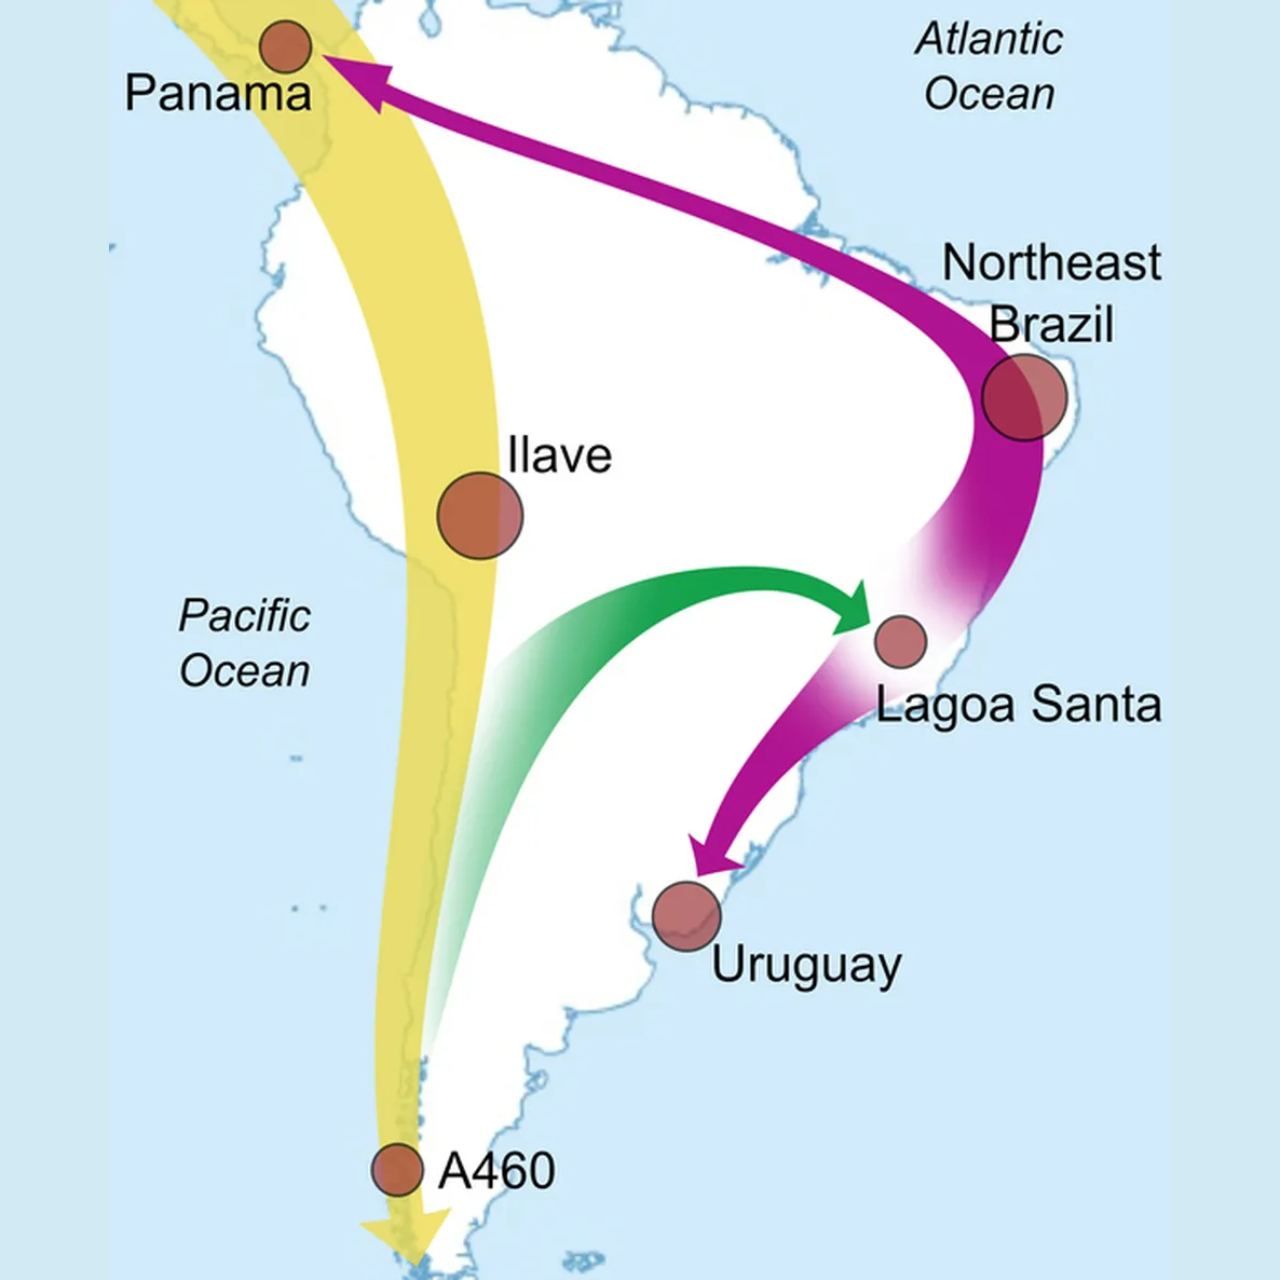 Esquema em mapa que indica as rotas migratórias dos antigos povos indígenas da América do Sul